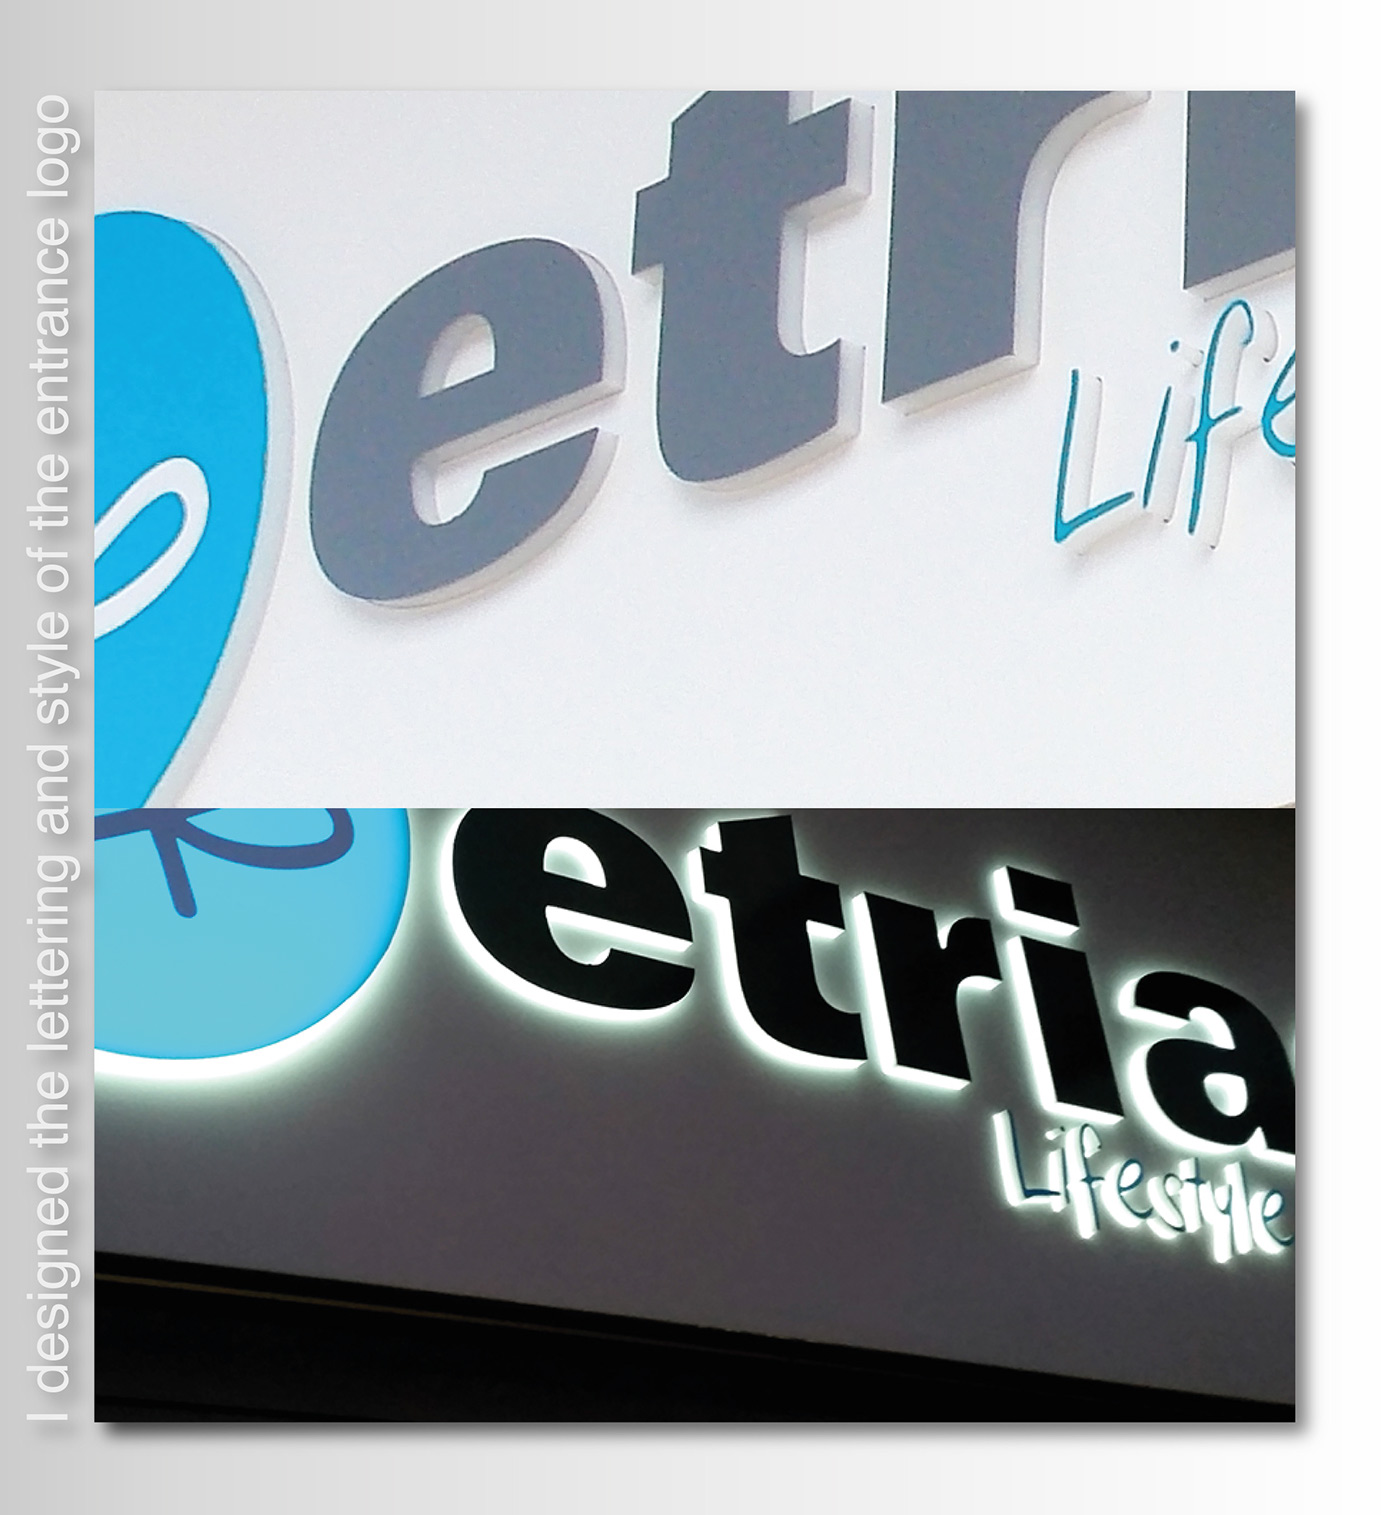 Etrias company Corporate Identity store e-commerce design illustrations